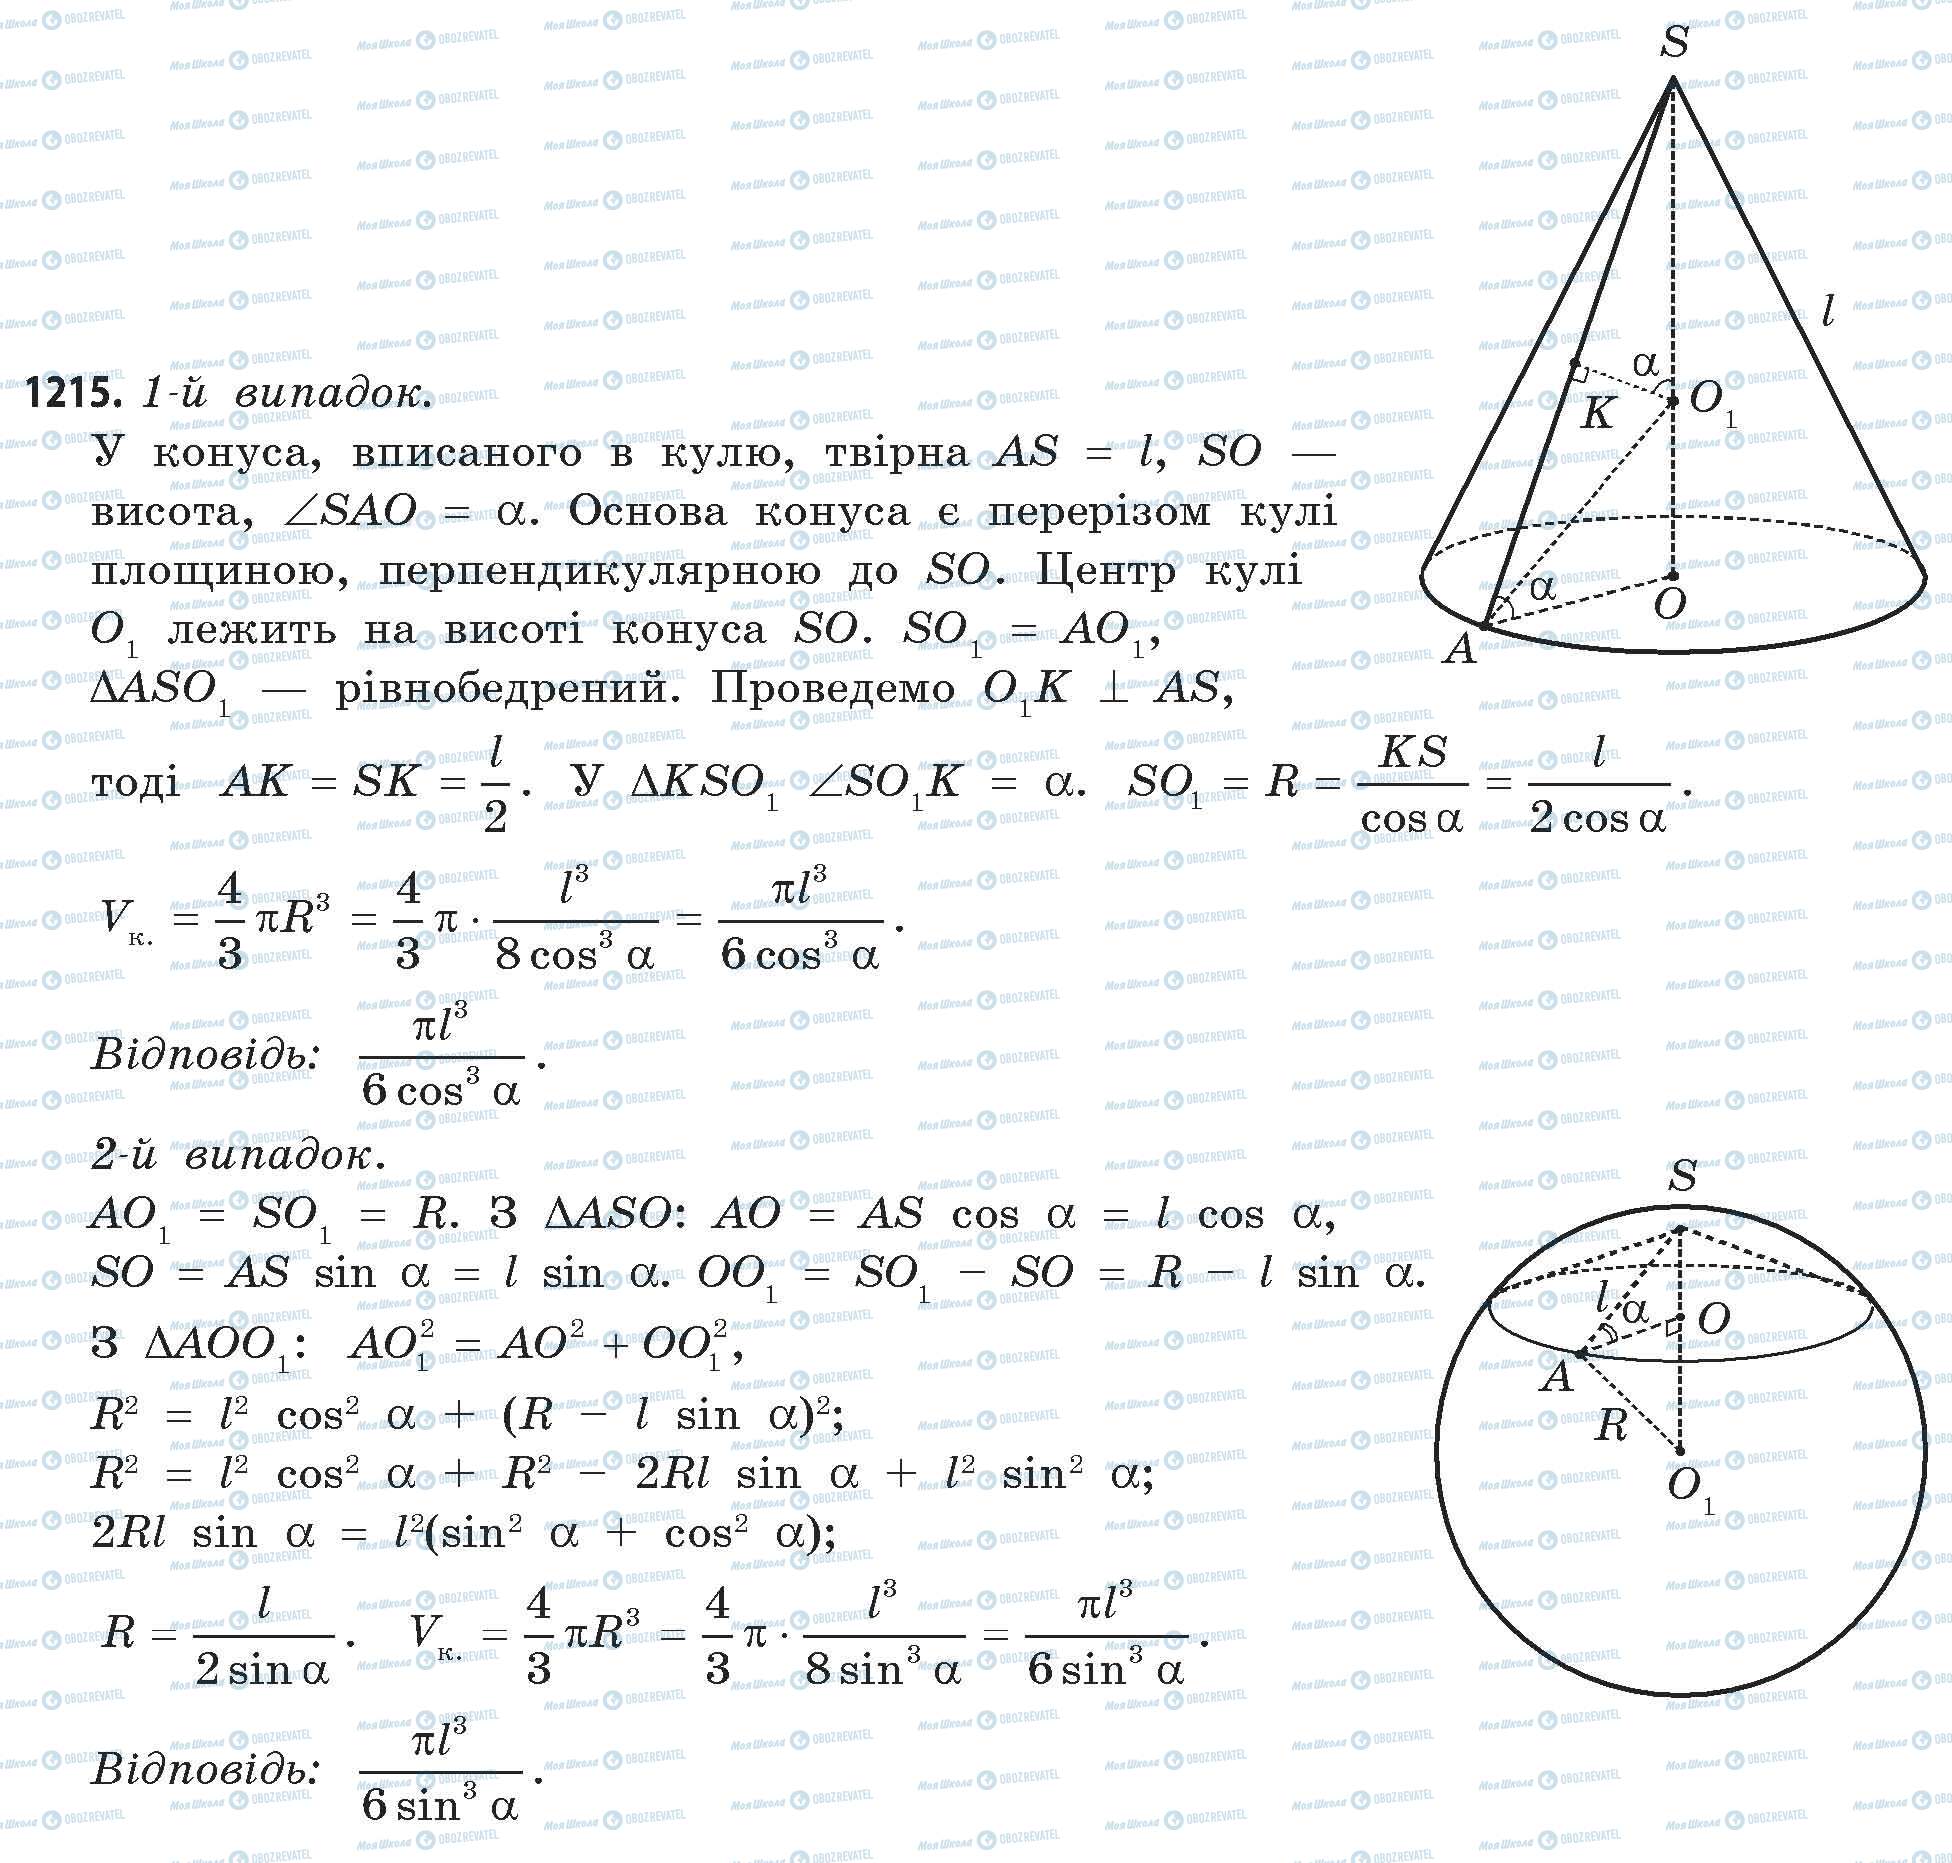 ГДЗ Математика 11 класс страница 1215